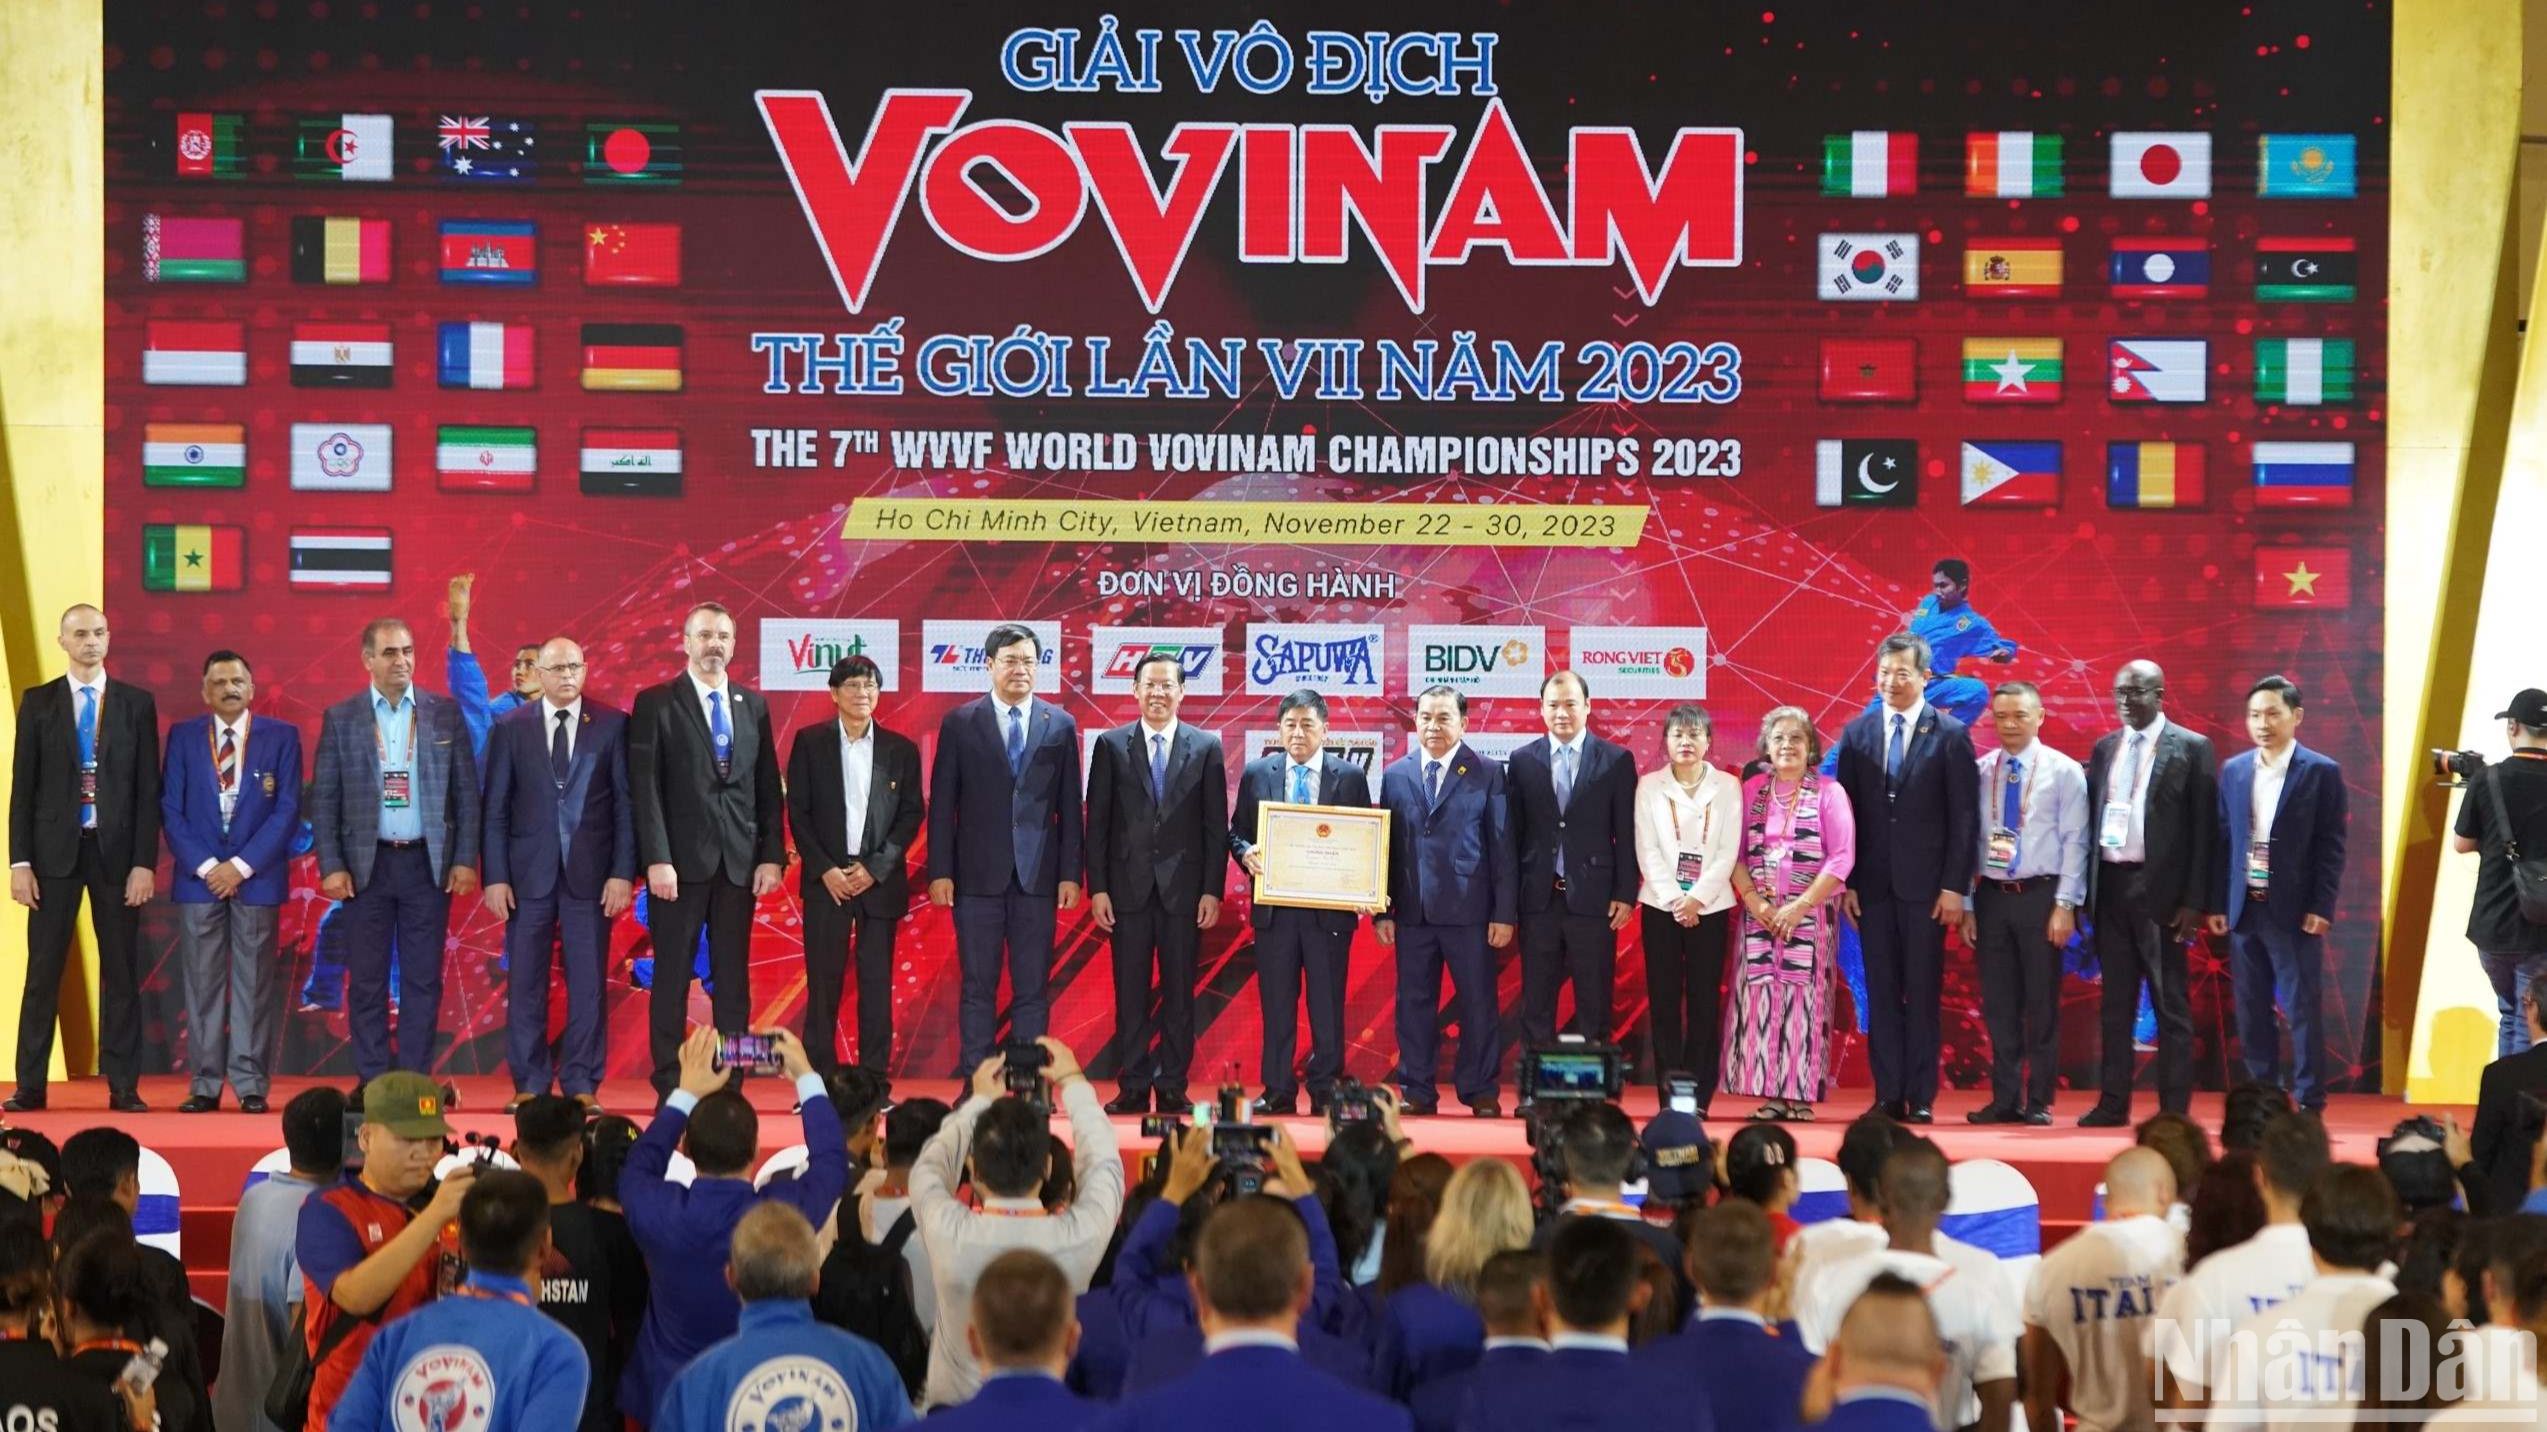 Khai mạc giải vô địch Vovinam thế giới lần thứ VII tại Việt Nam ảnh 2